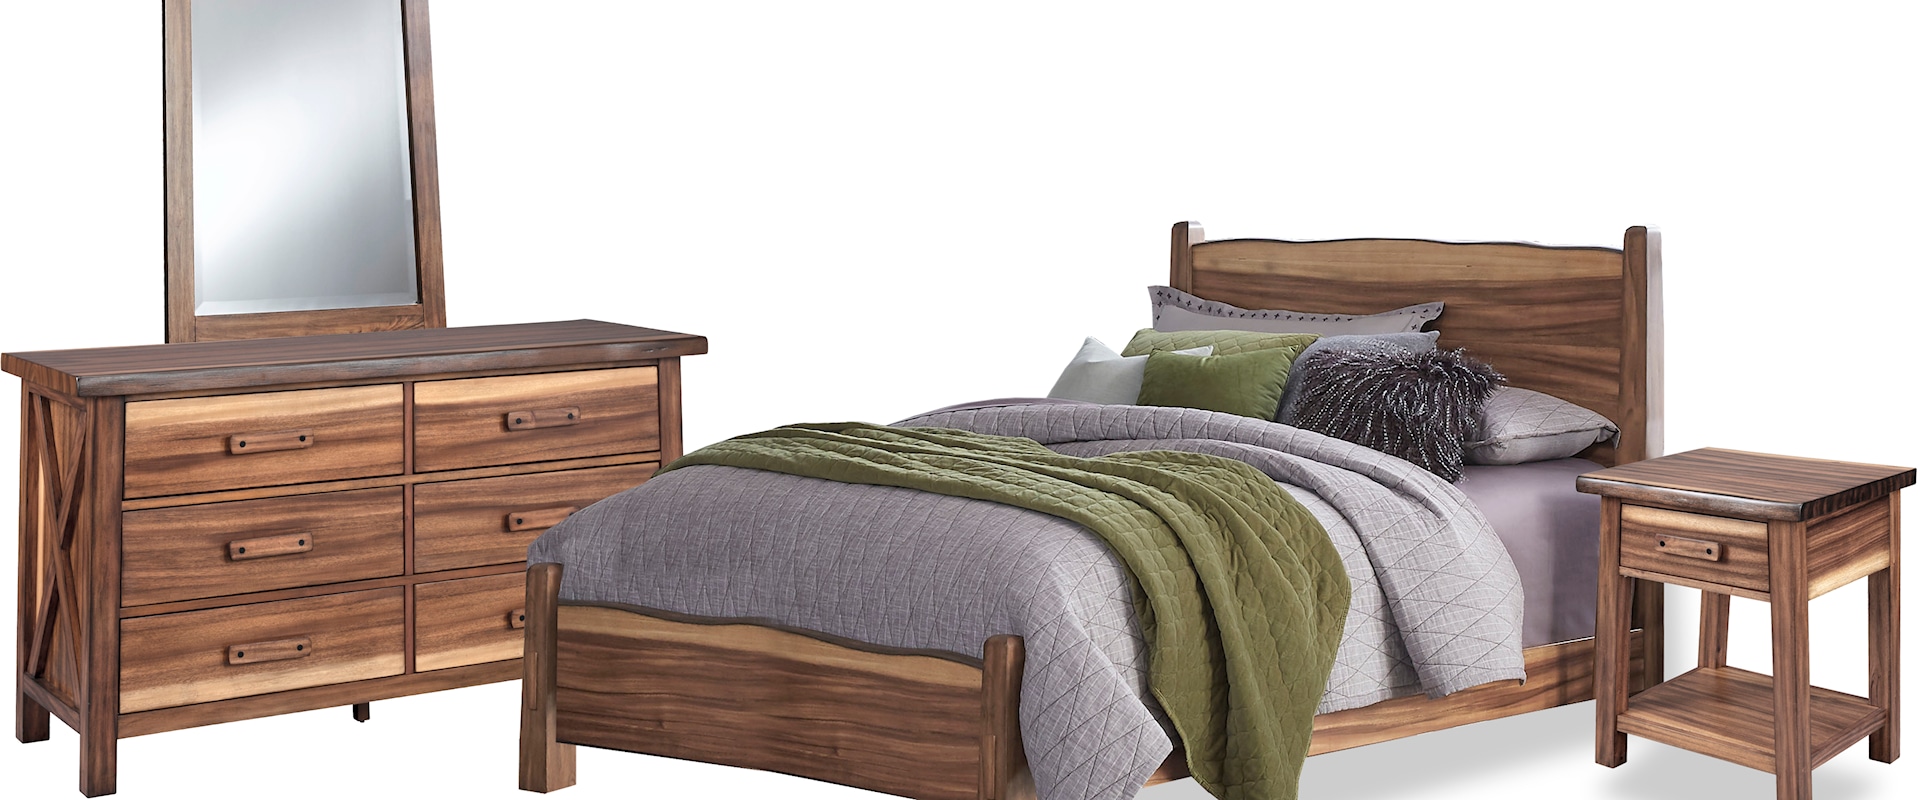 Rustic Queen Bedroom Set with Nightstand, Dresser, and Mirror